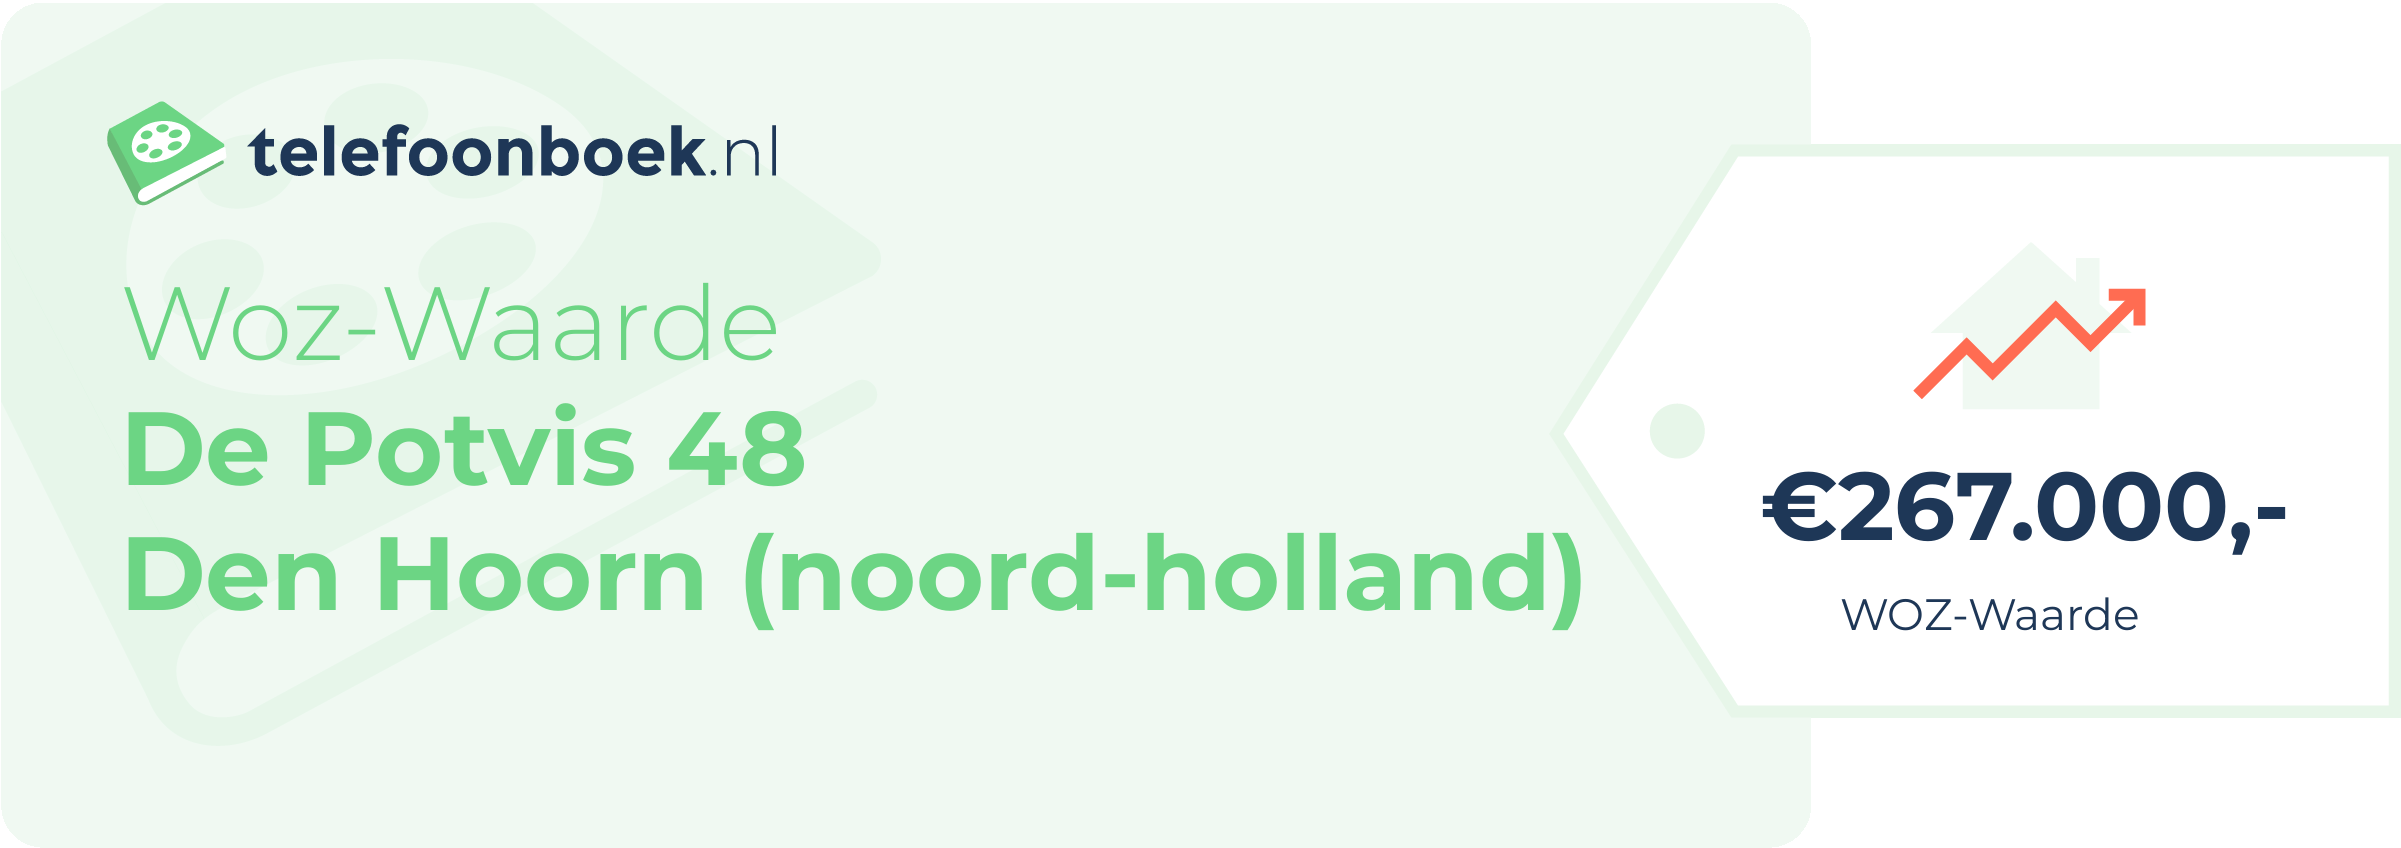 WOZ-waarde De Potvis 48 Den Hoorn (Noord-Holland)